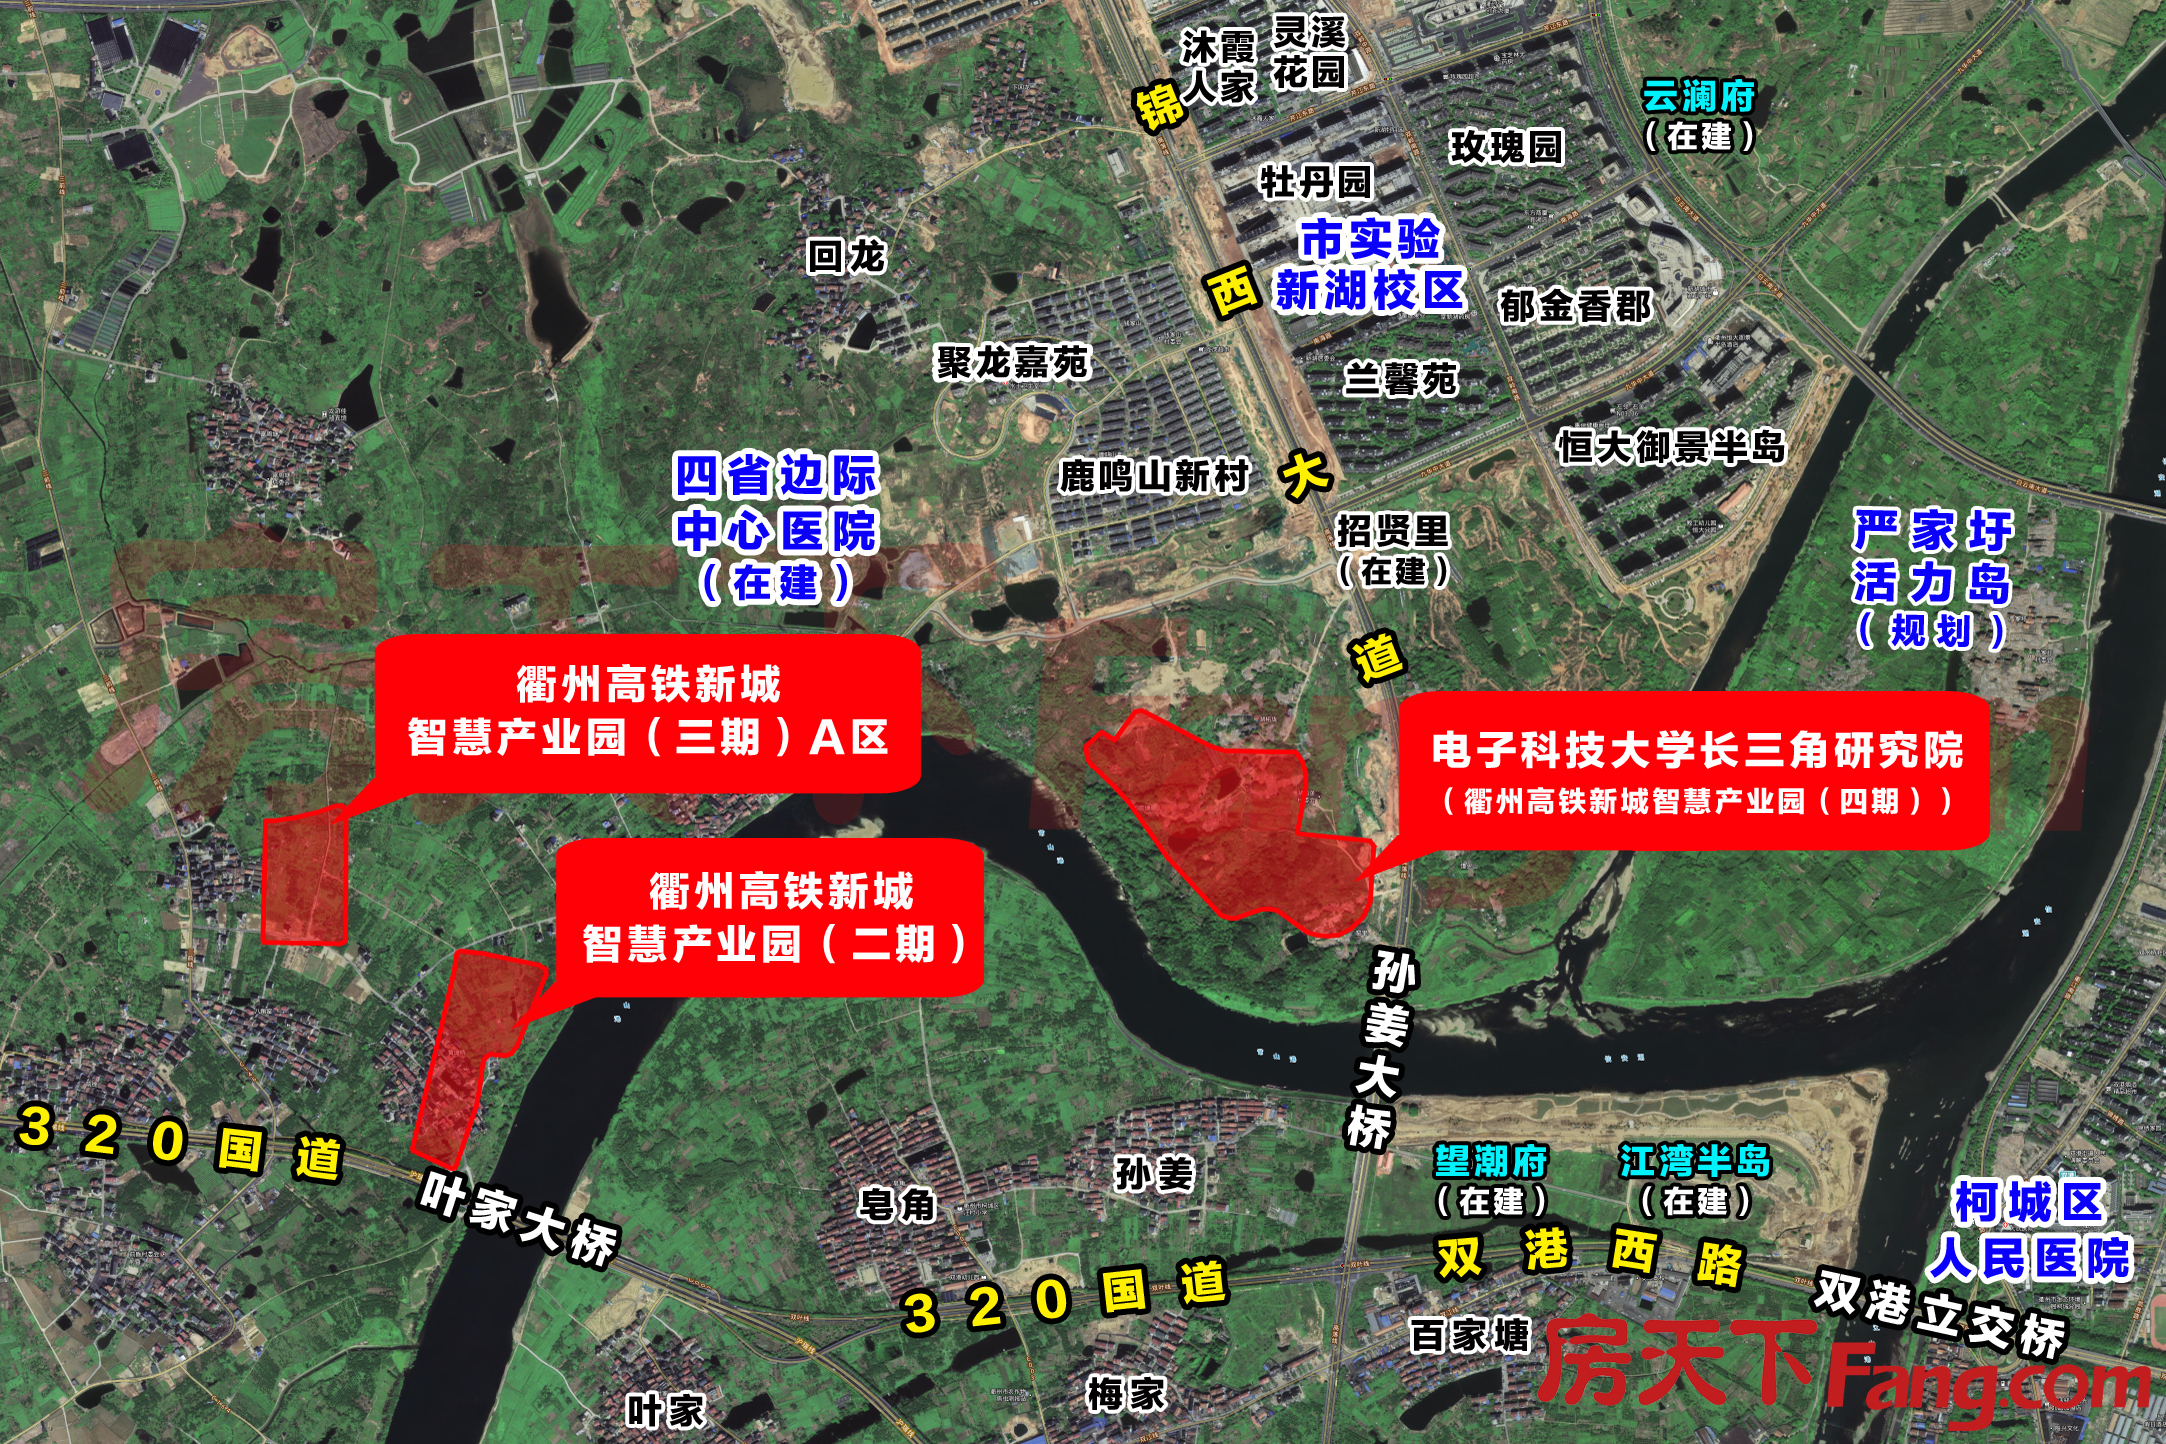 衢州高铁新城智慧产业园规划公示 将建设电子科技大学长三角研究院